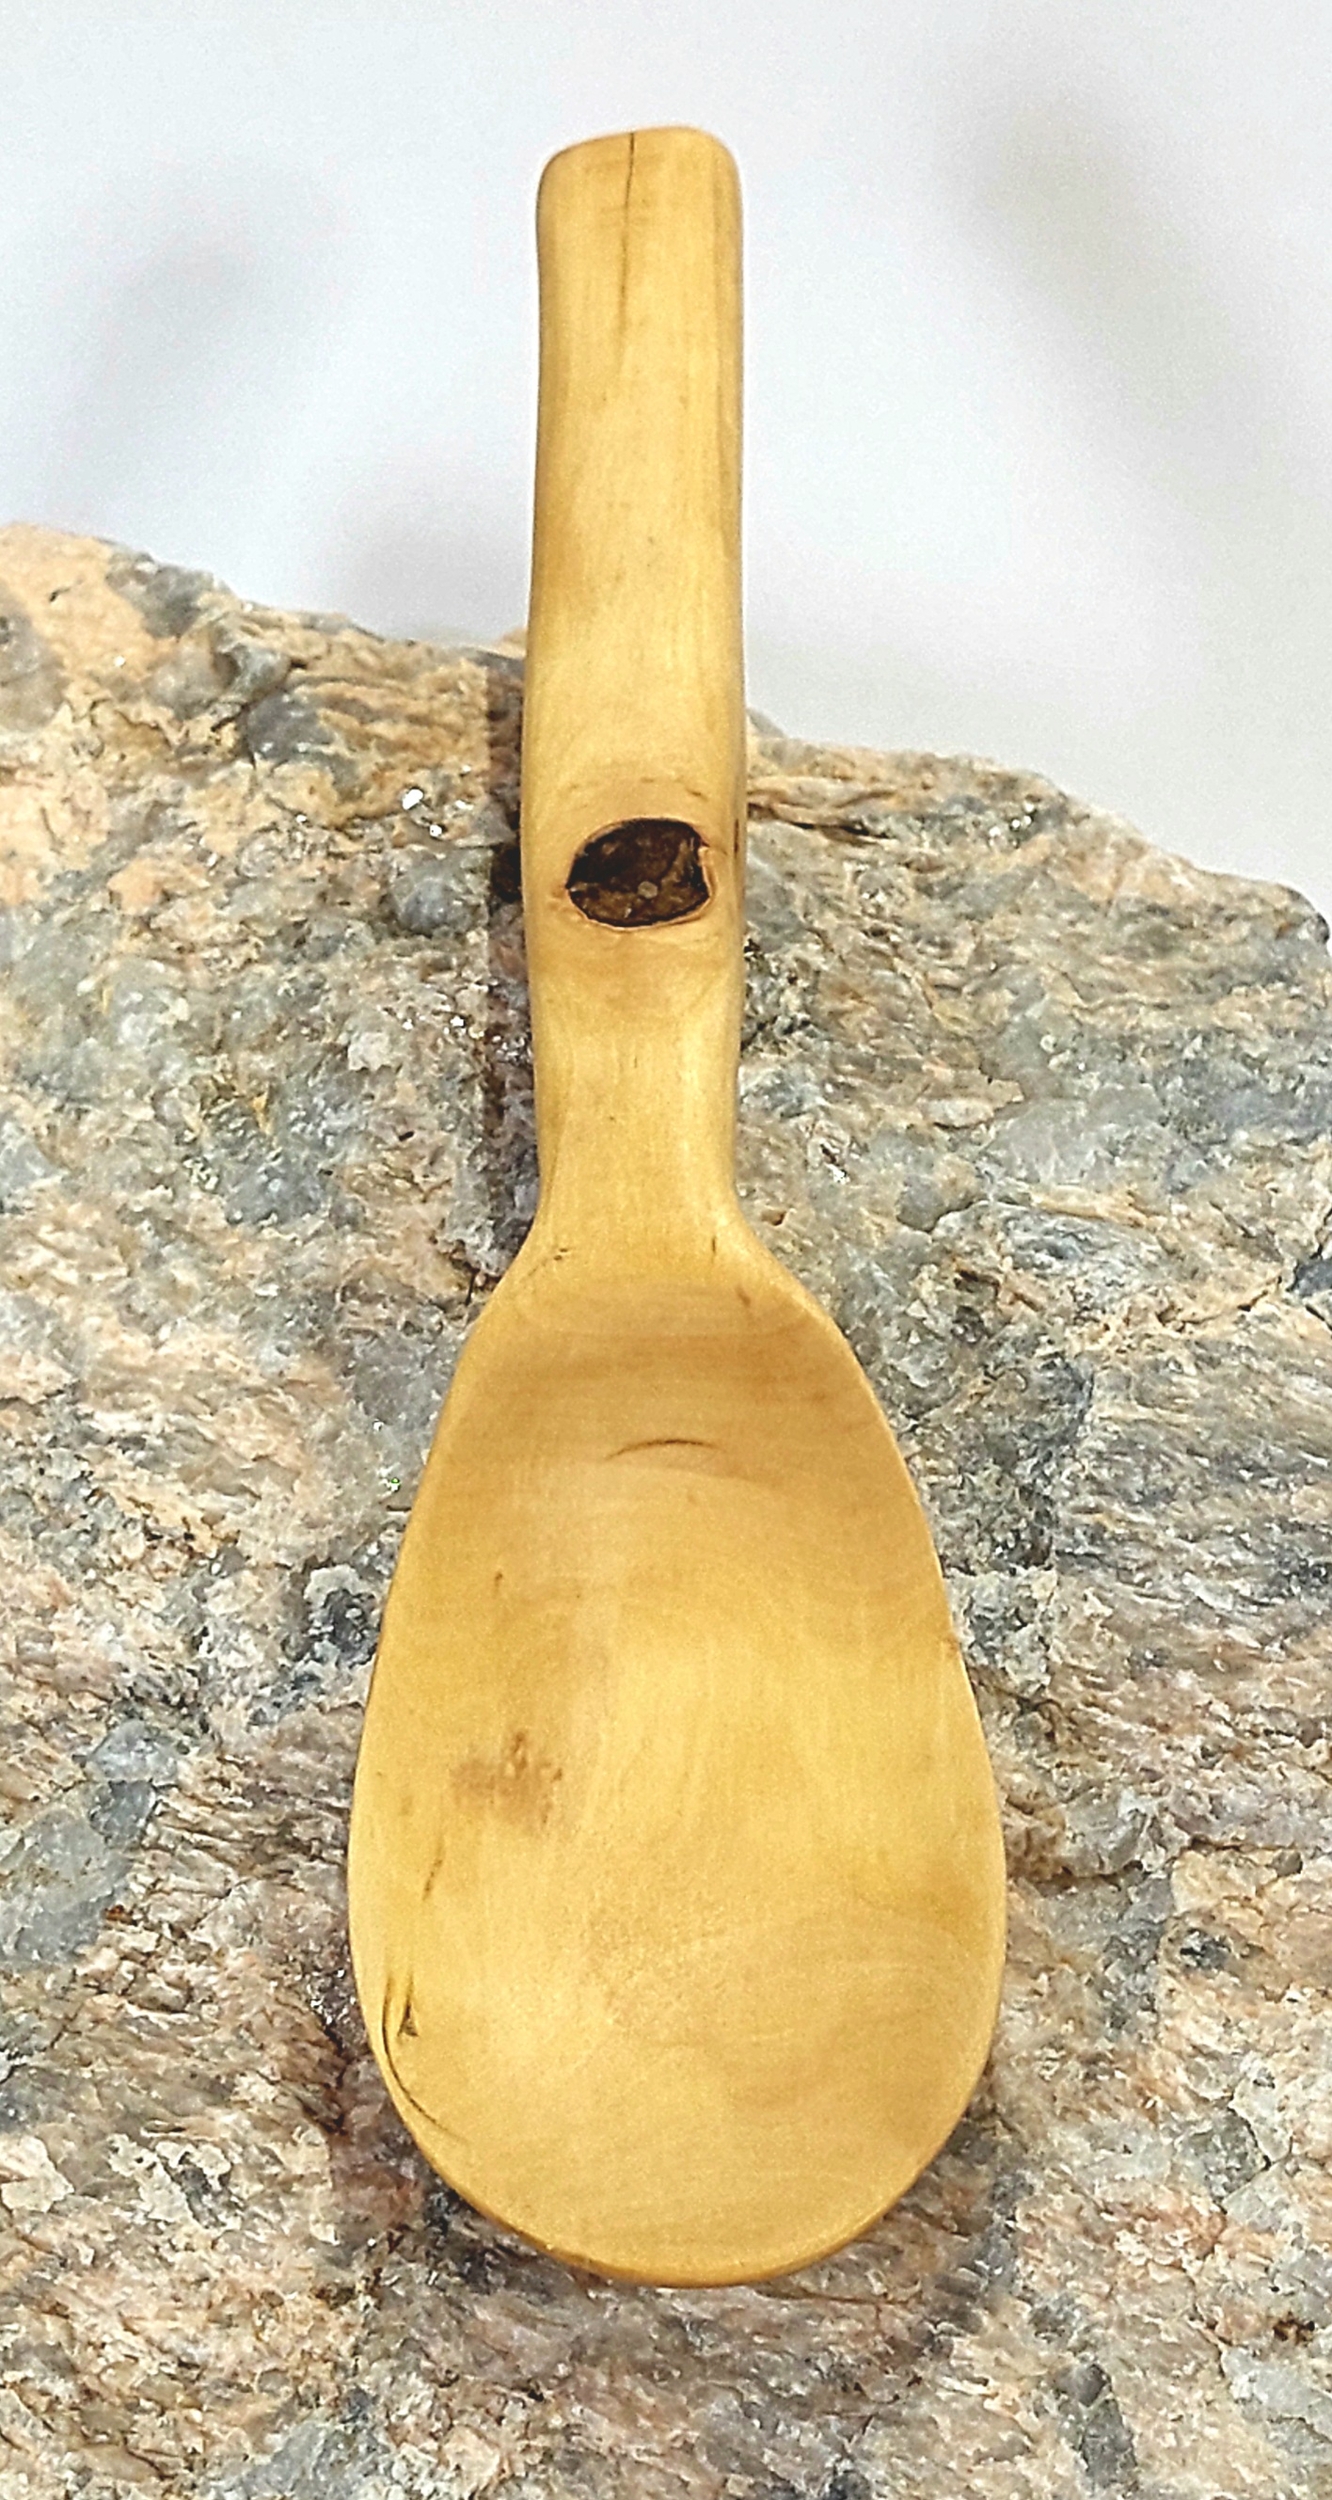 Petite cuillère en bois de noyer - wkhdeco